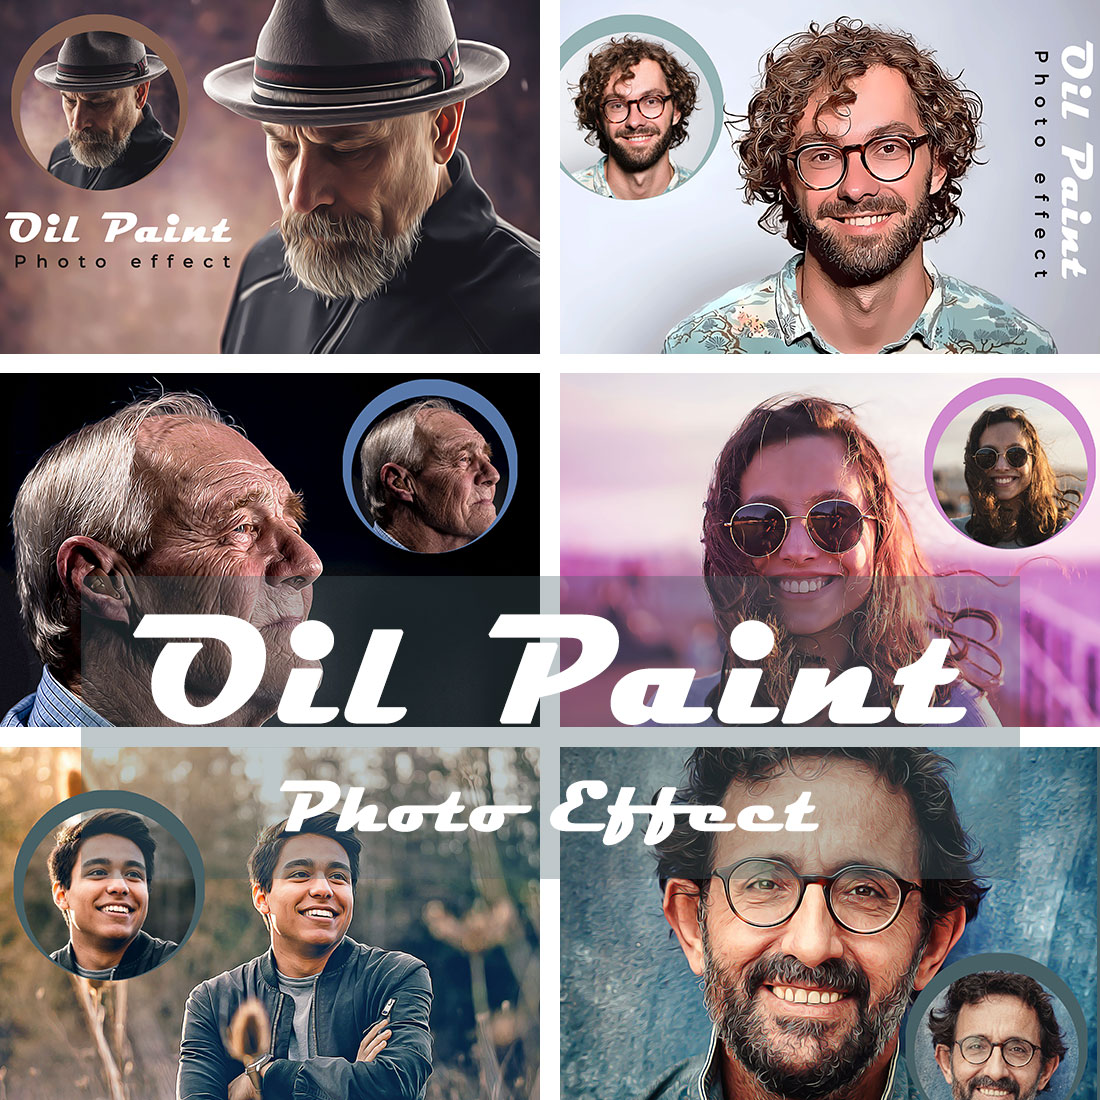 Oil Paint Photo Effect Bundle cover image.